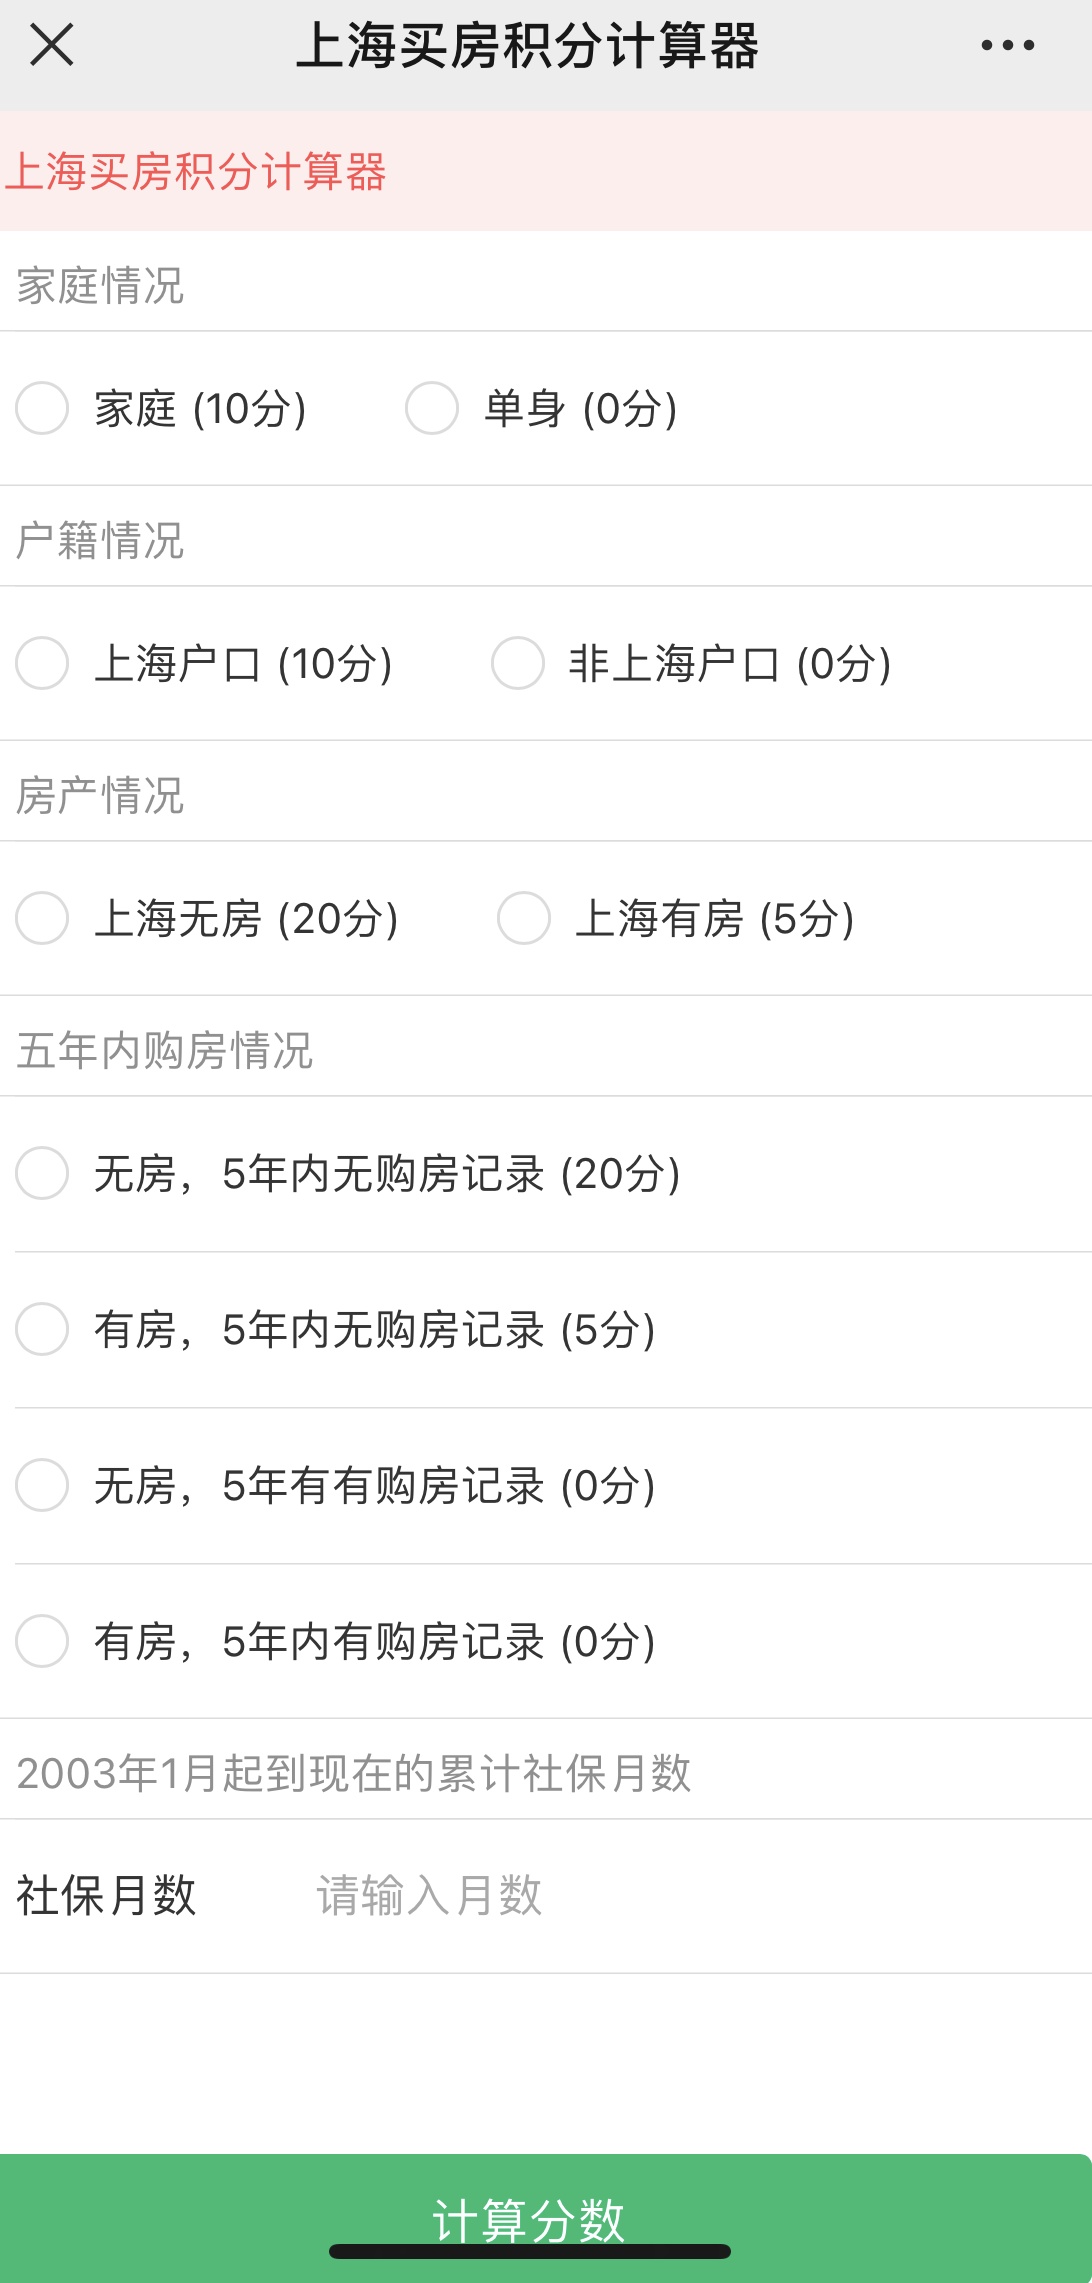 昨天上海新楼盘摇号首次采用计分排序 今天“买房积分计算器”就走红了